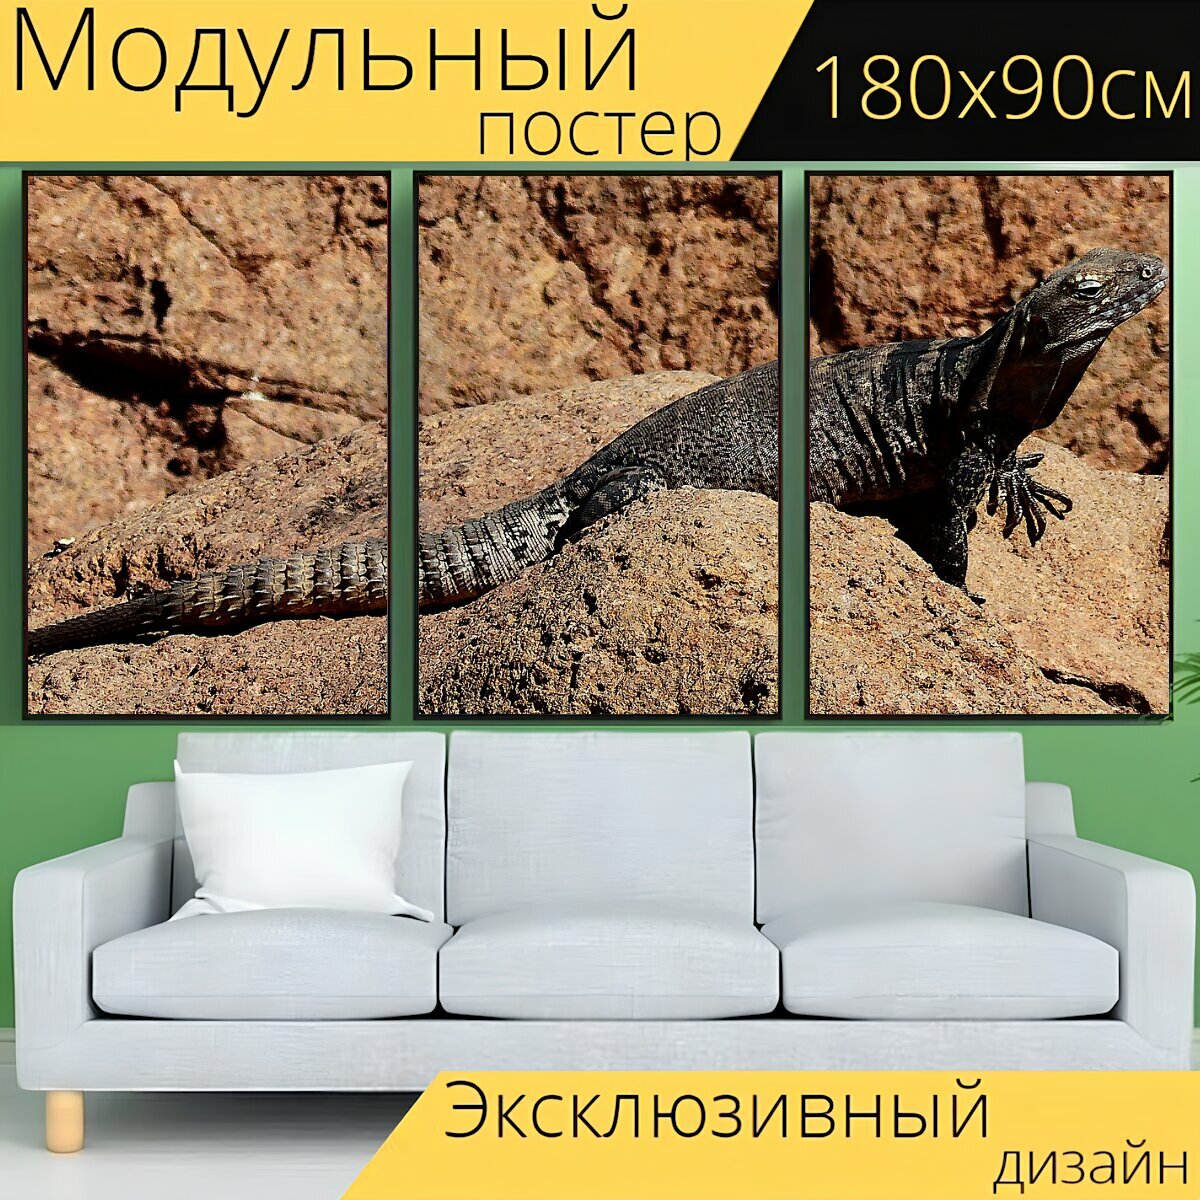 Модульный постер "Животное ящерица гигант" 180 x 90 см. для интерьера